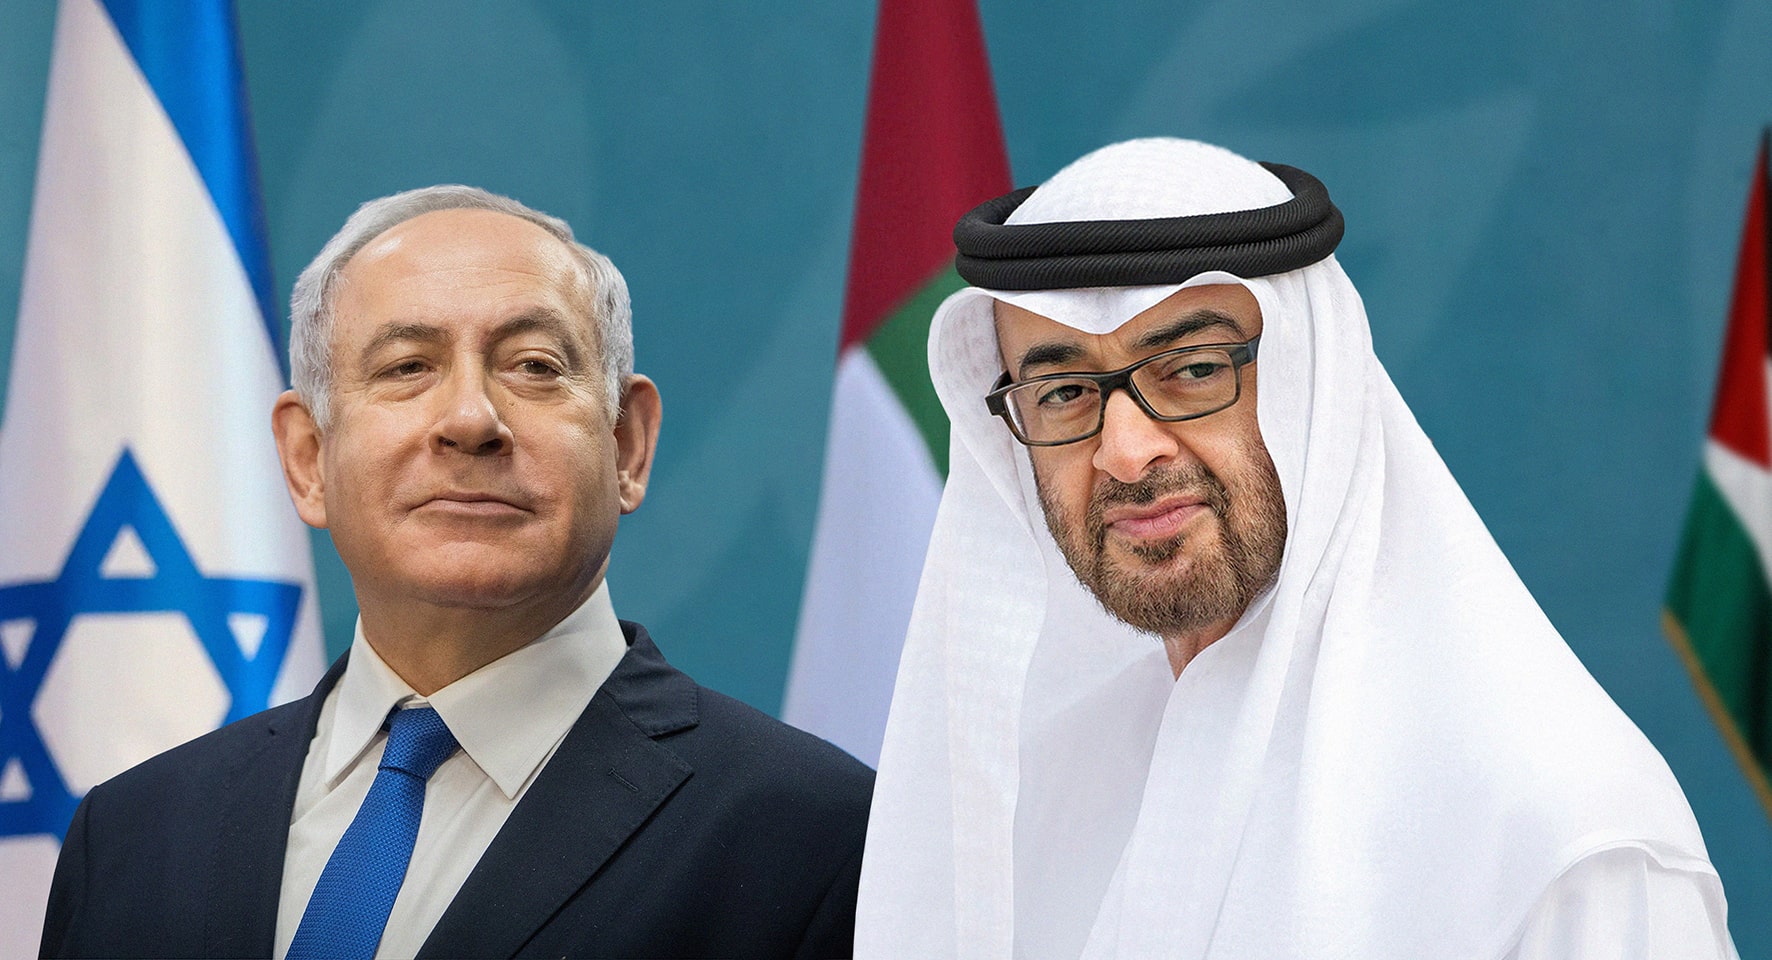 صورة الإمارات تختار إسرائيل دوناً عن كل دول العالم للتعاون معها في إنتاج لقاح كورونا لضمان حصول الفلسطينيين عليه